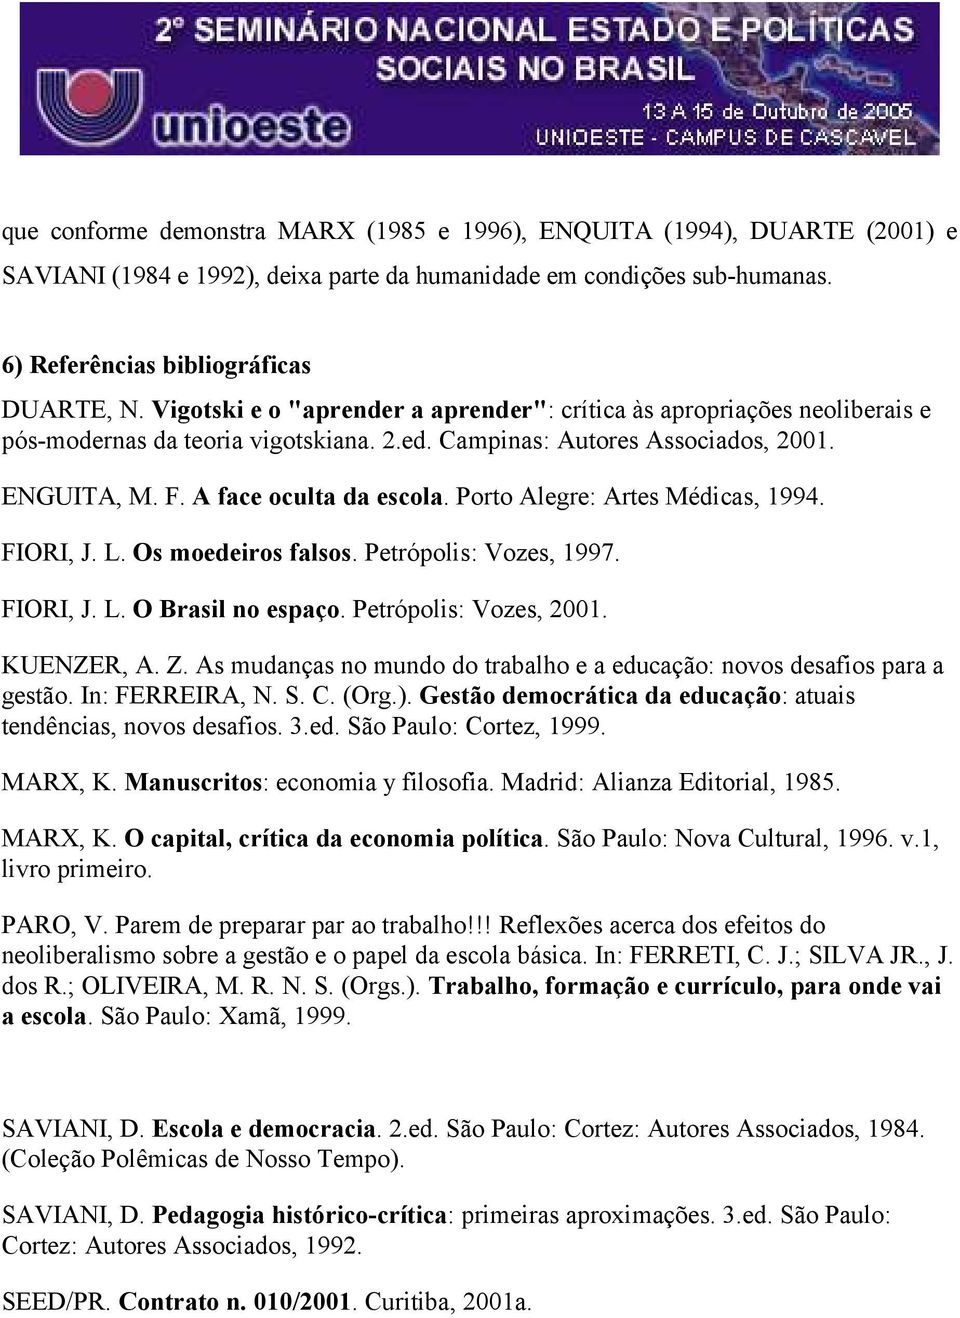 Porto Alegre: Artes Médicas, 1994. FIORI, J. L. Os moedeiros falsos. Petrópolis: Vozes, 1997. FIORI, J. L. O Brasil no espaço. Petrópolis: Vozes, 2001. KUENZER, A. Z.